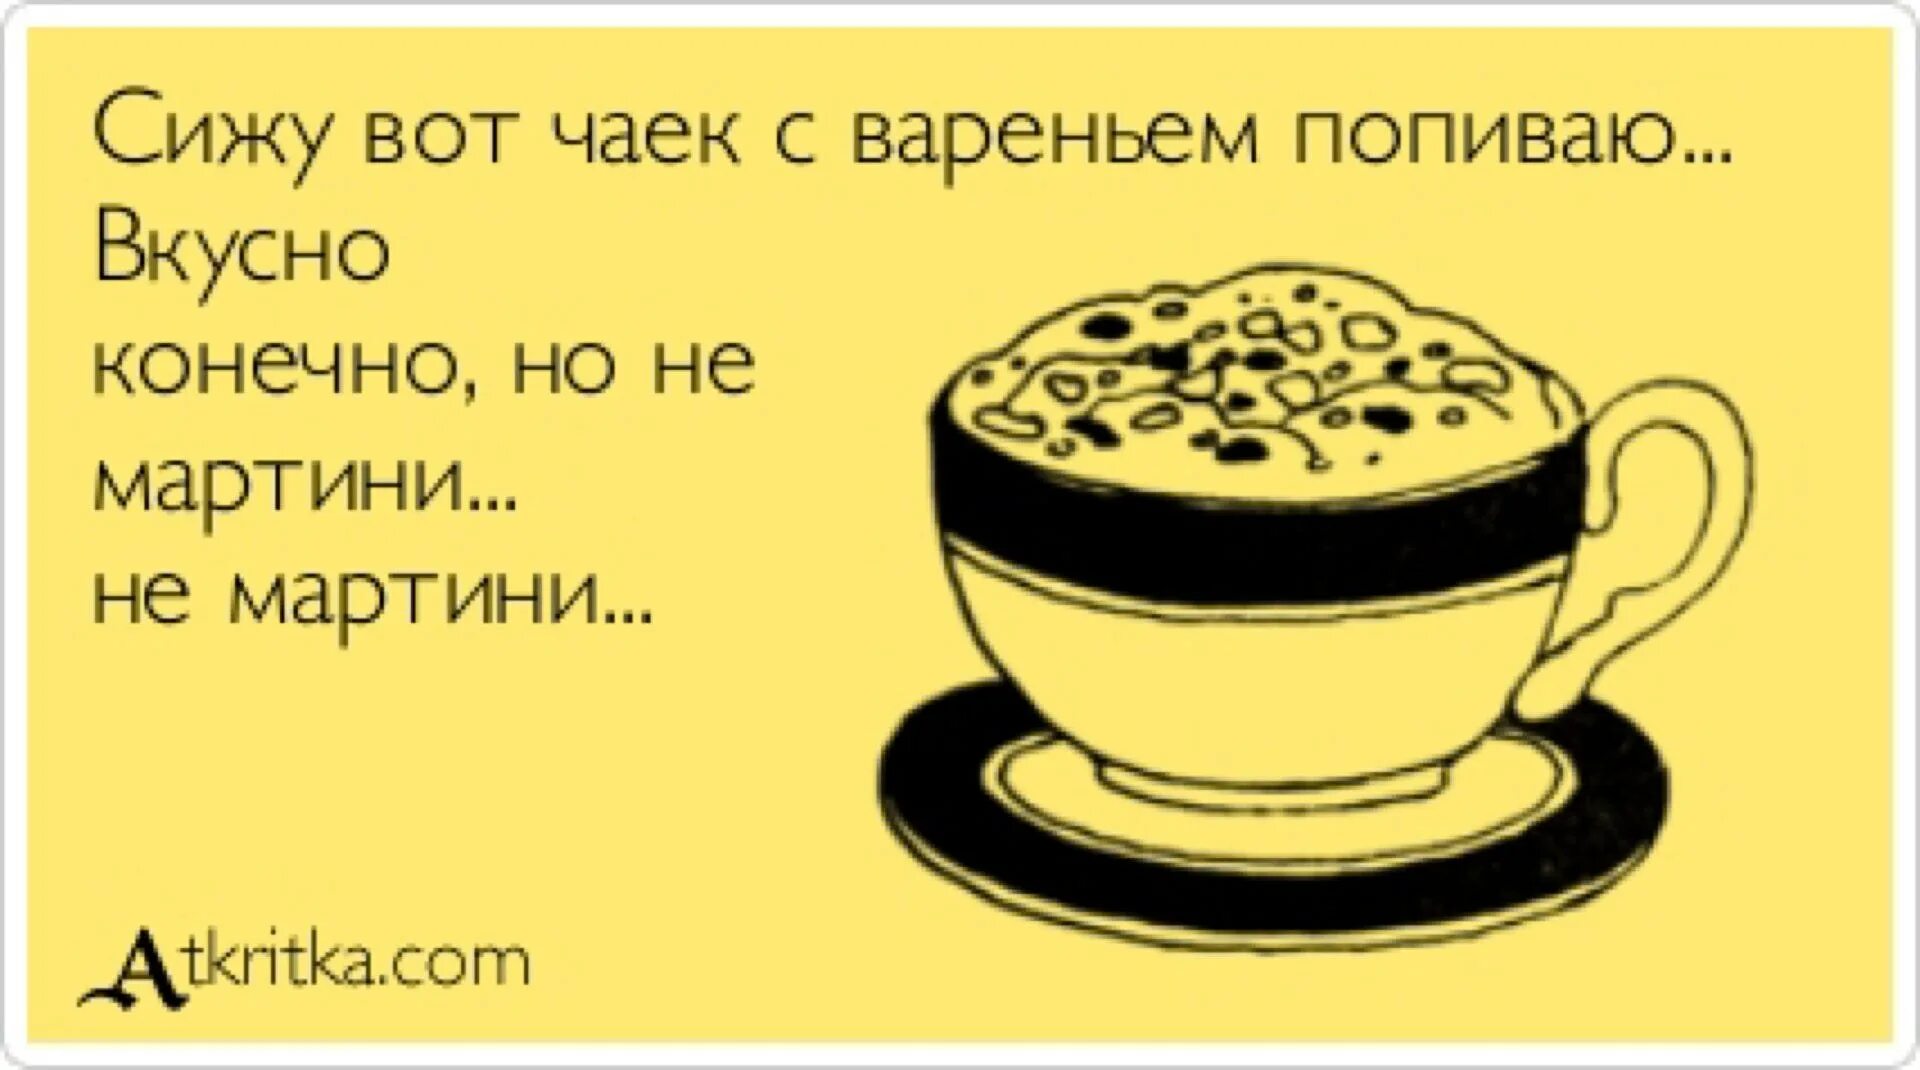 Пить нужно сидя. Анекдоты про кофе в картинках. Смешные картинки про кофе. Смешные открытки про кофе. Утренняя шутка.